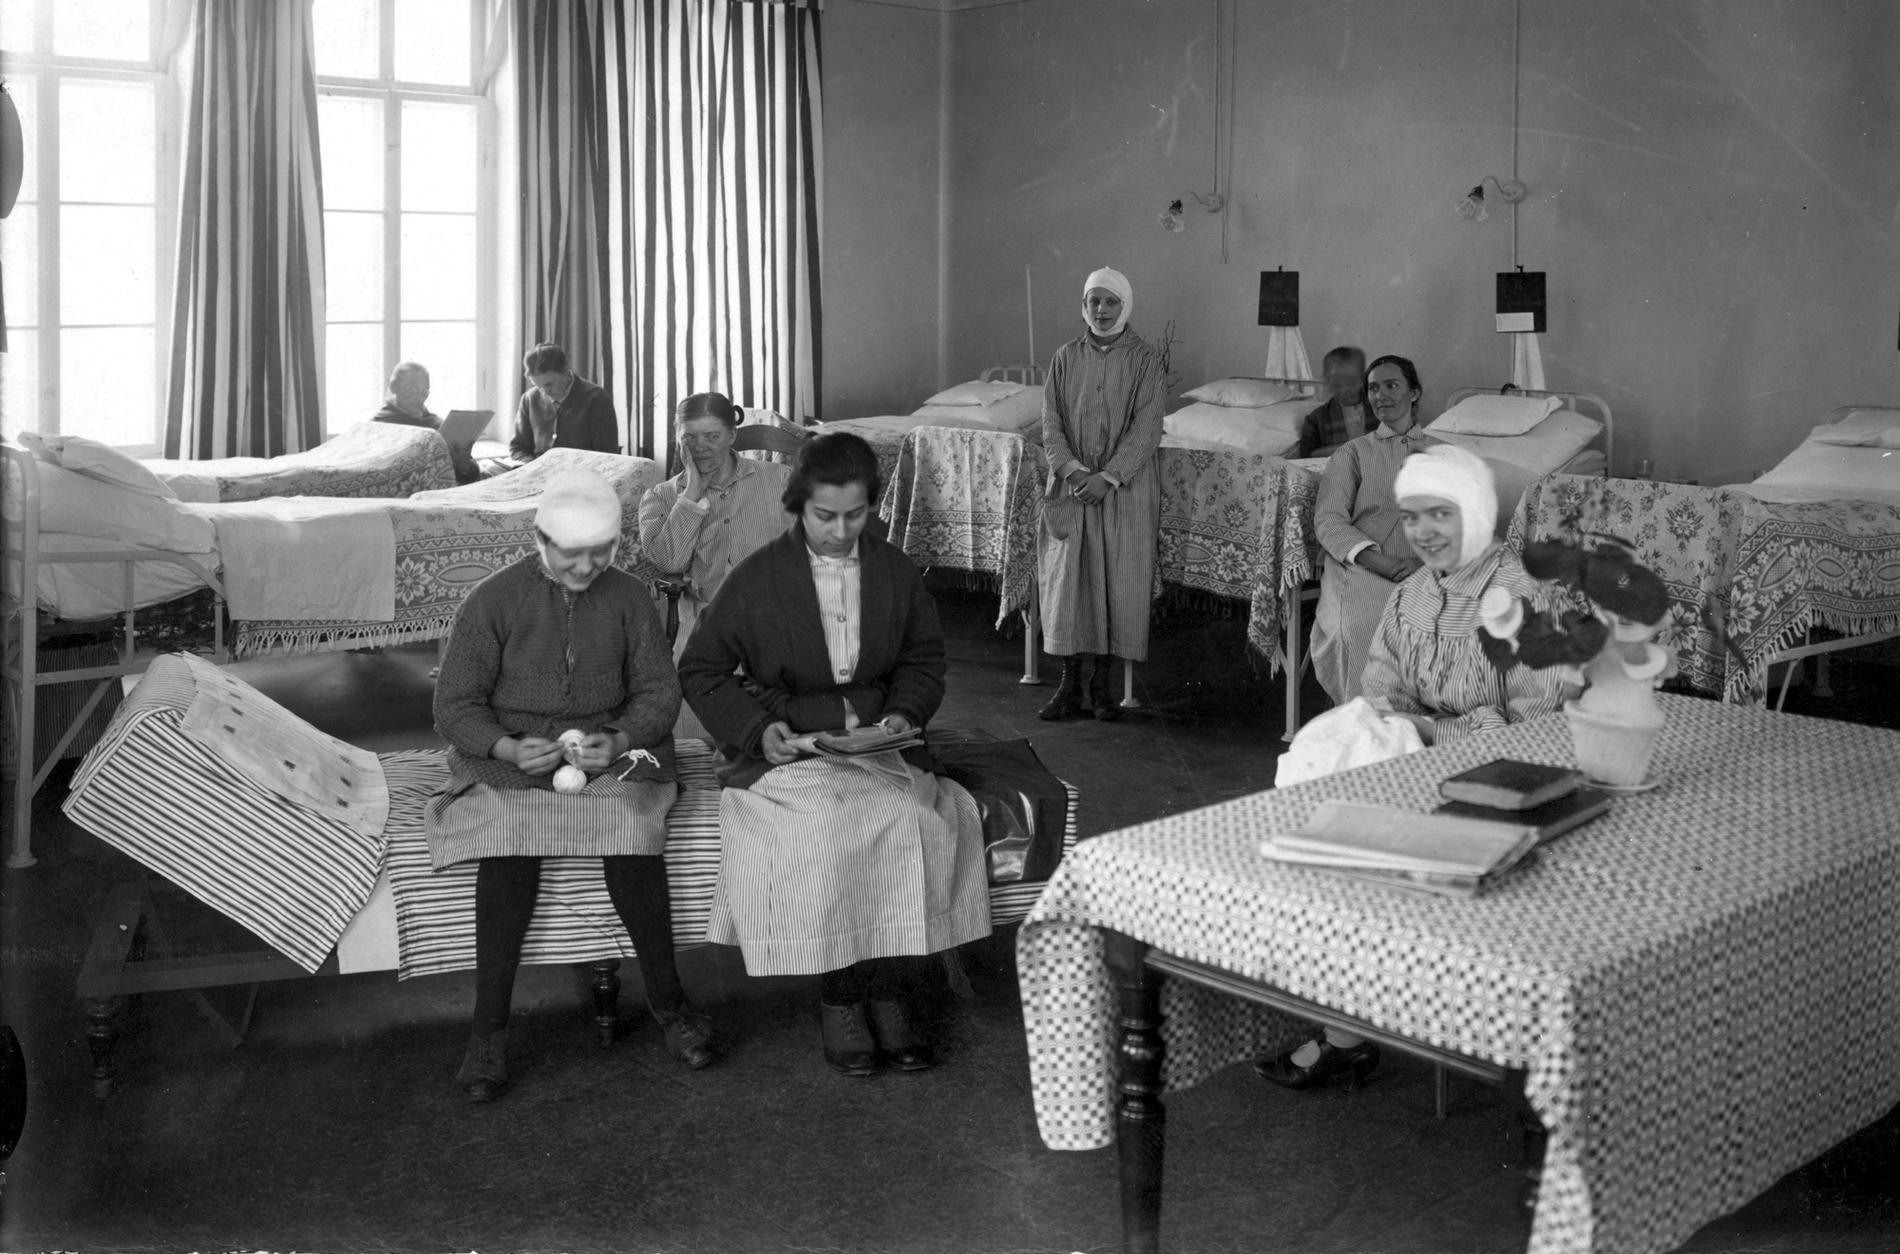 Sabbatsbergs sjukhus år 1925, med patienter och sjuksängar. Foto: TT